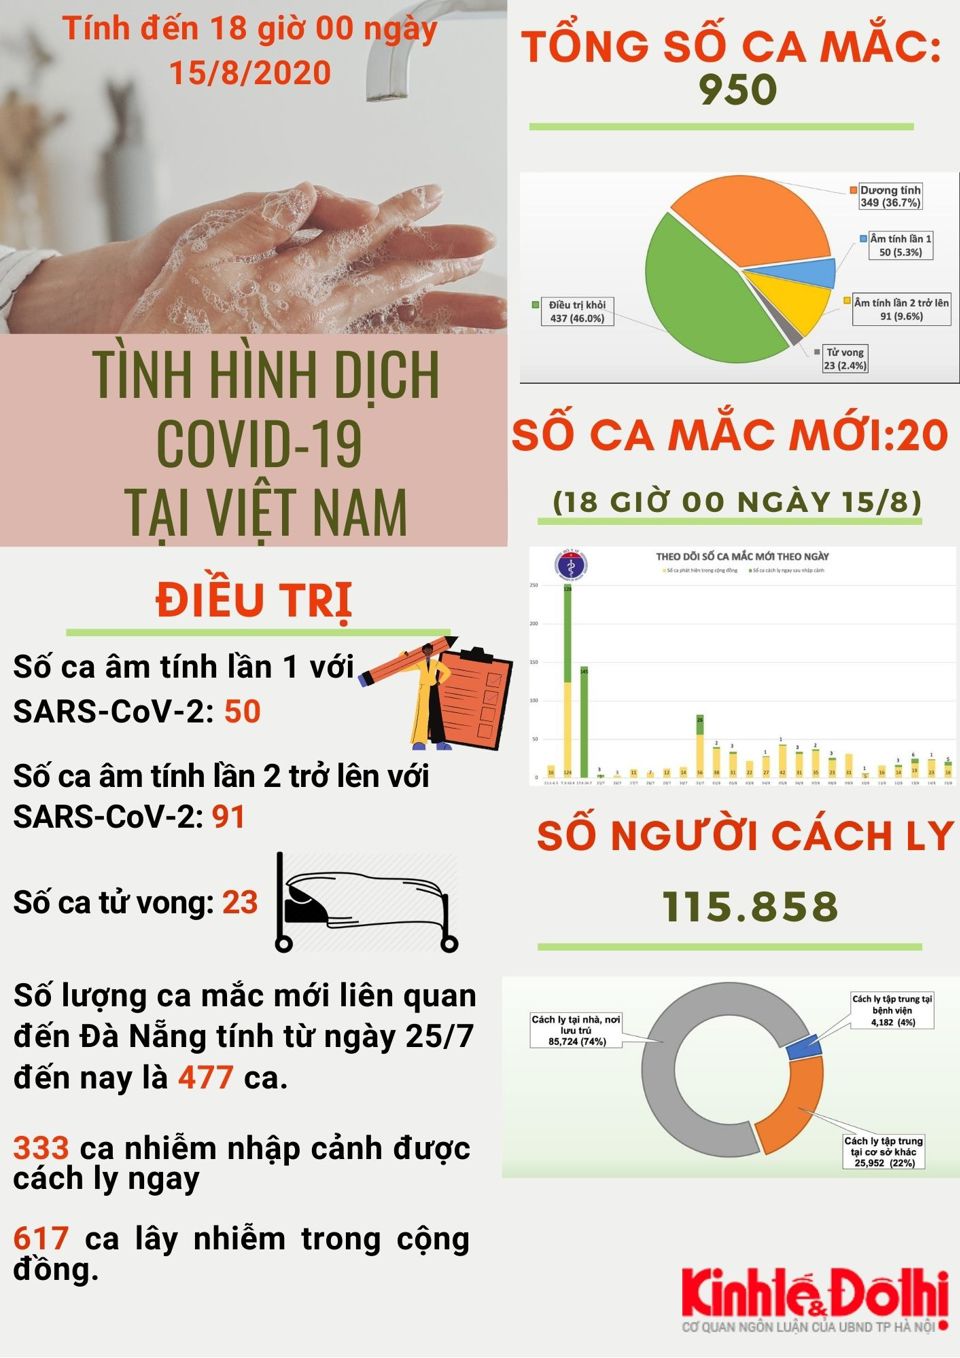 [Infographic] Việt Nam ghi nhận 617 ca lây nhiễm trong cộng đồng - Ảnh 1